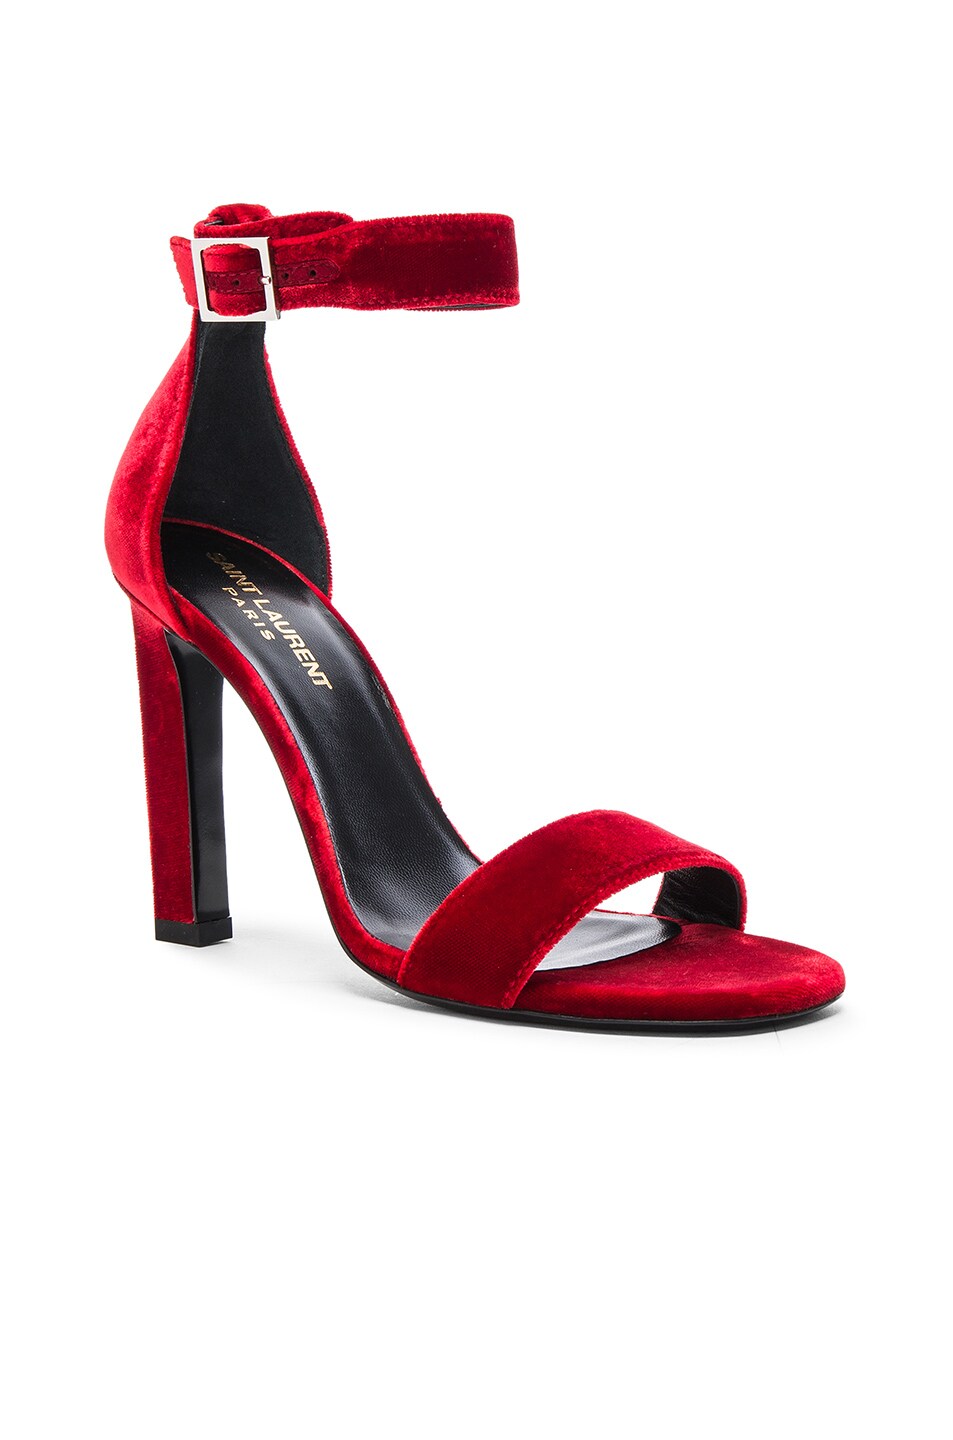 Saint Laurent Grace Velvet Ankle Strap Sandals in Red | FWRD